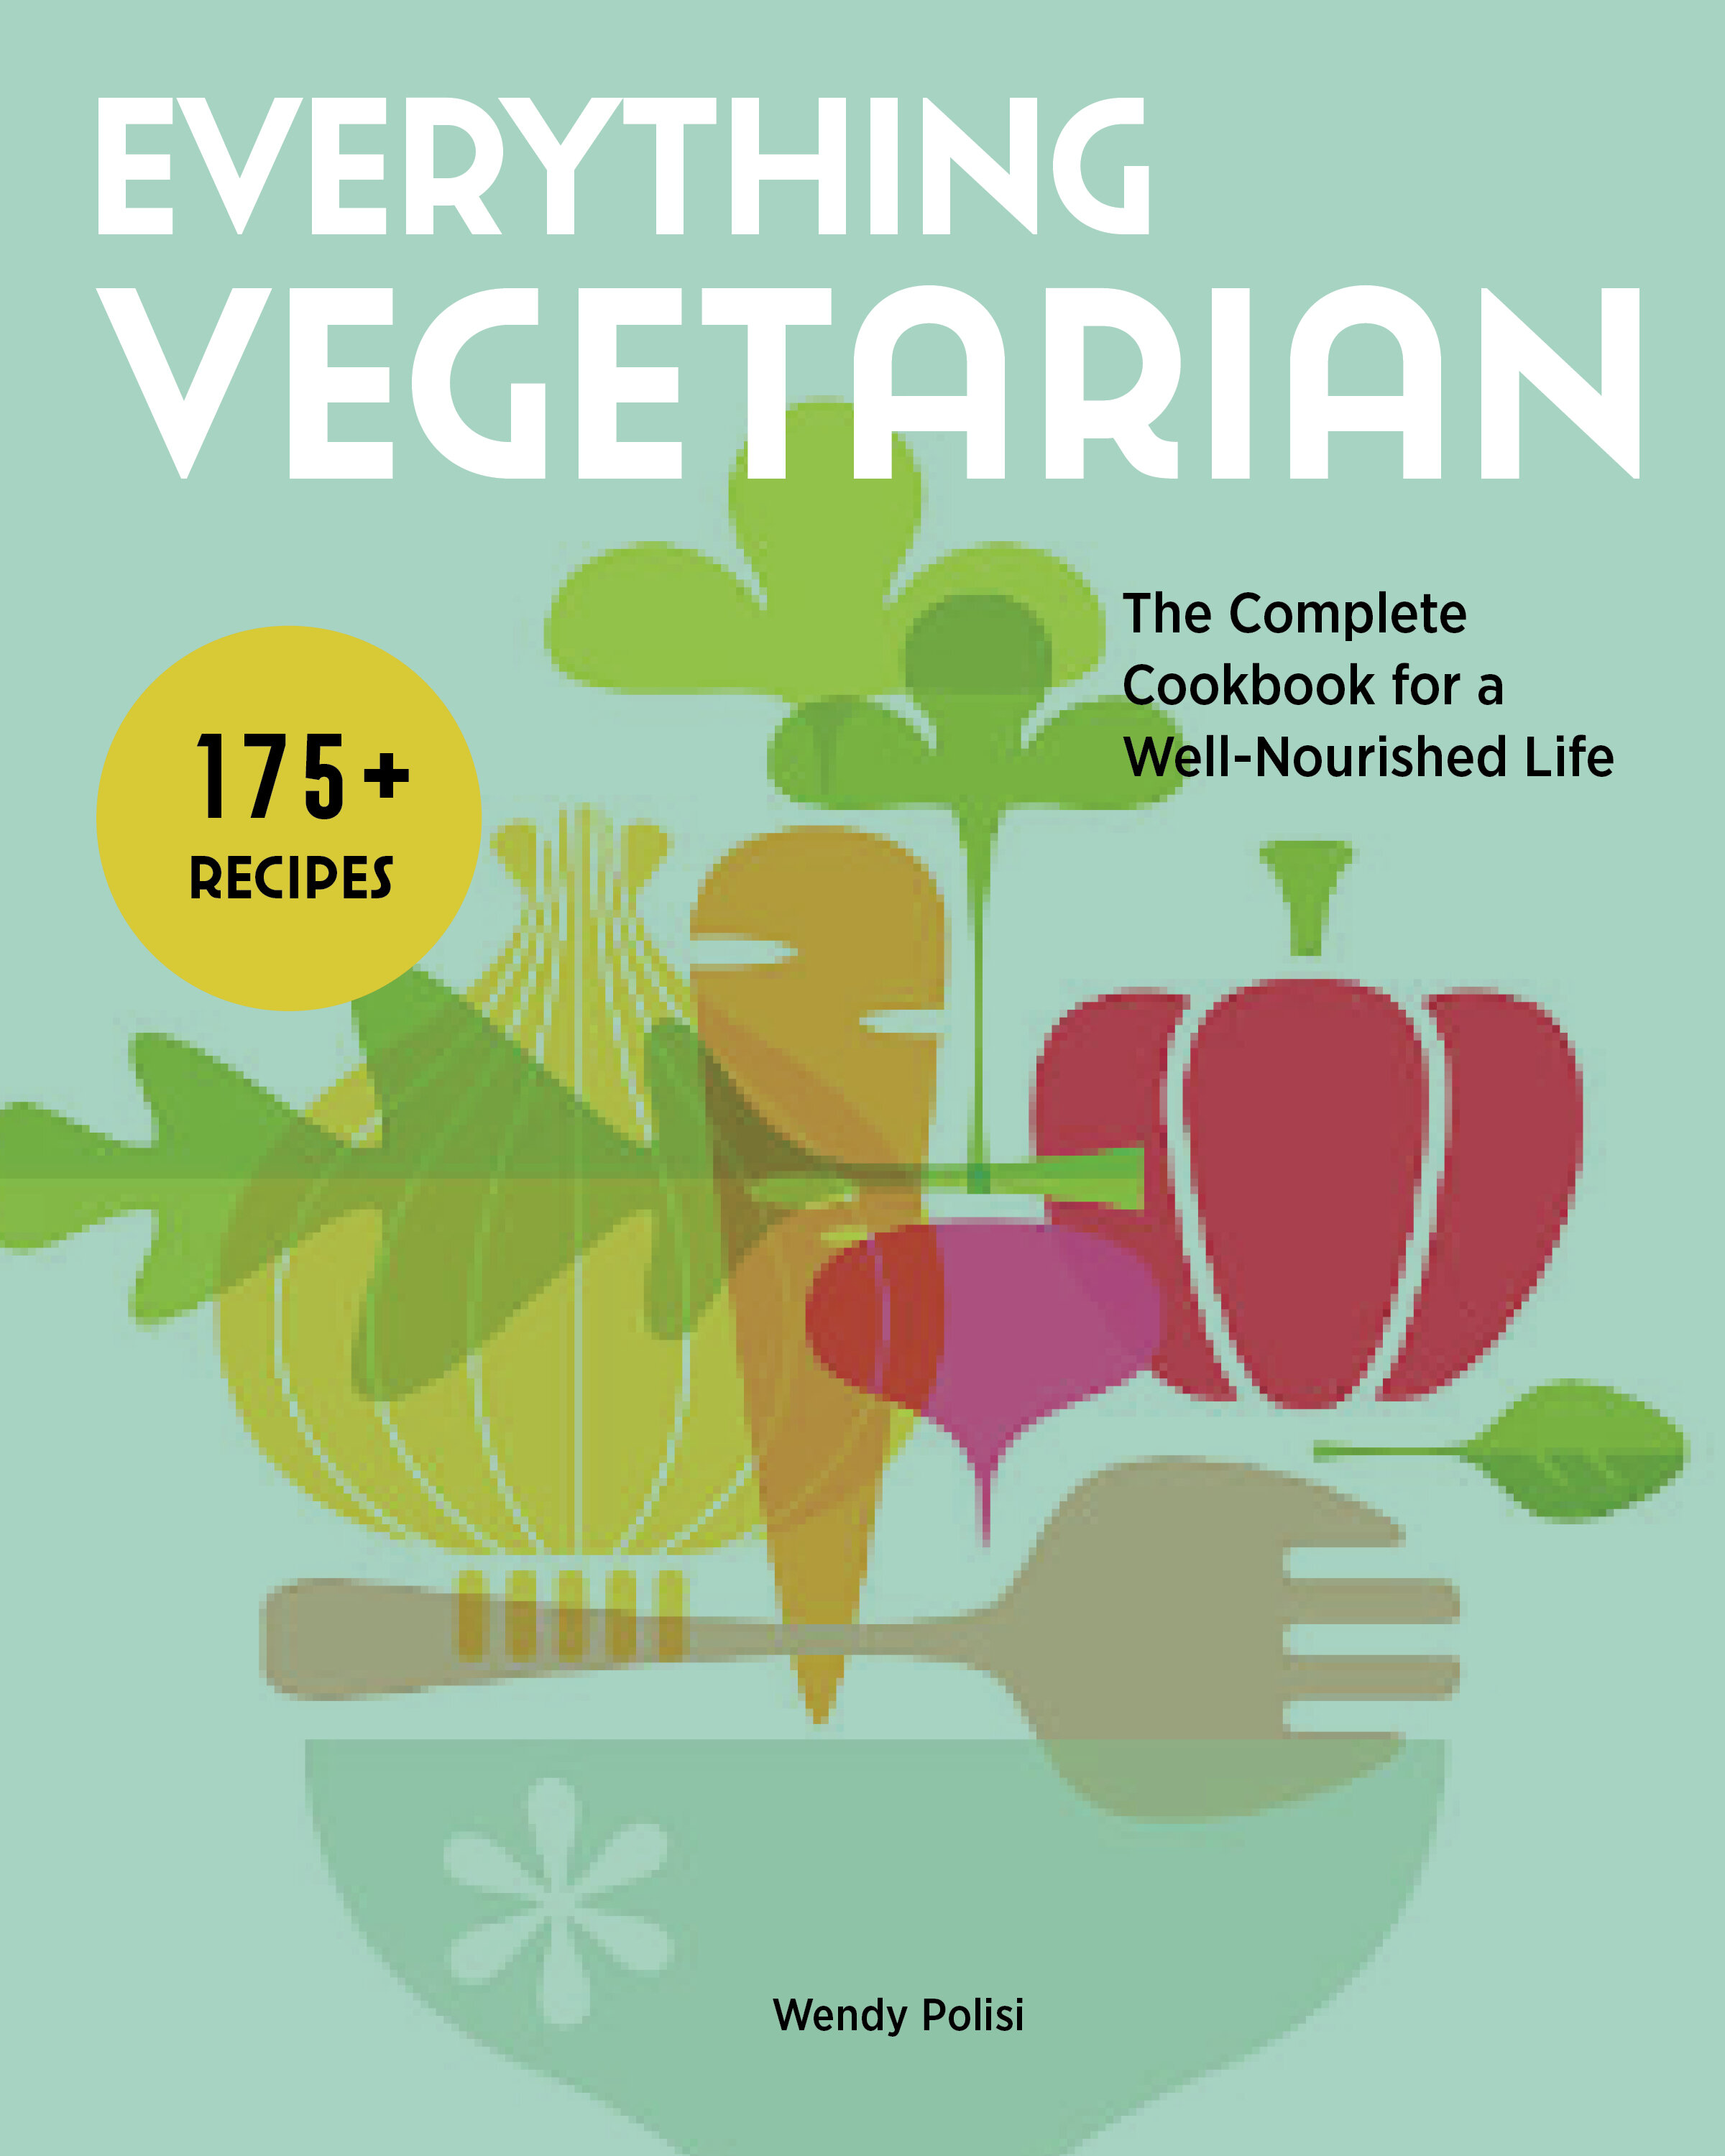 18Everything Vegetarian.jpg